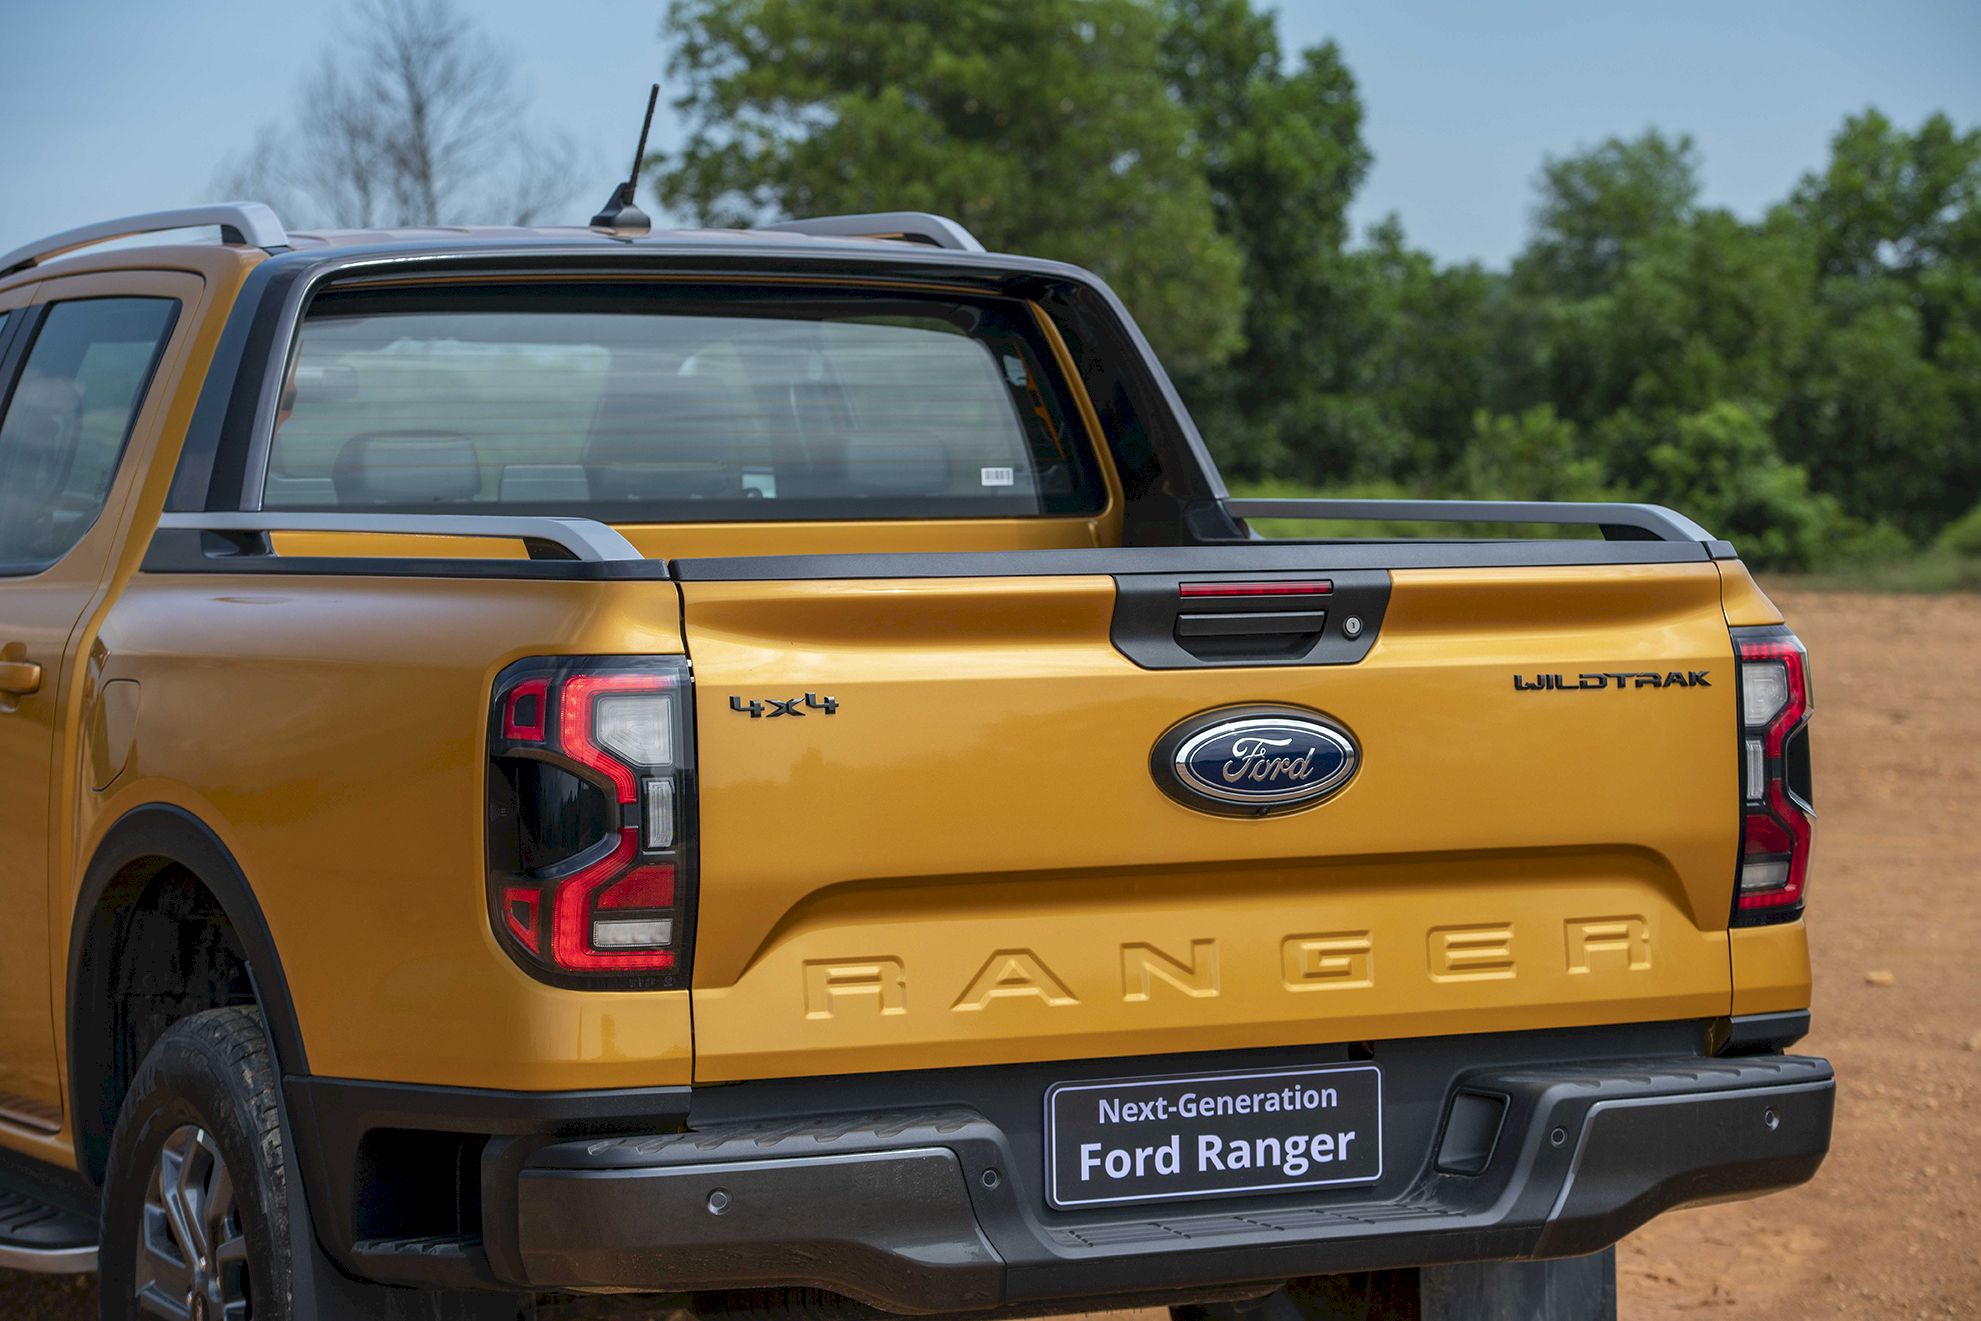 Ford Ranger bị chênh giá tại đại lý cao nhất hơn 90 triệu đồng